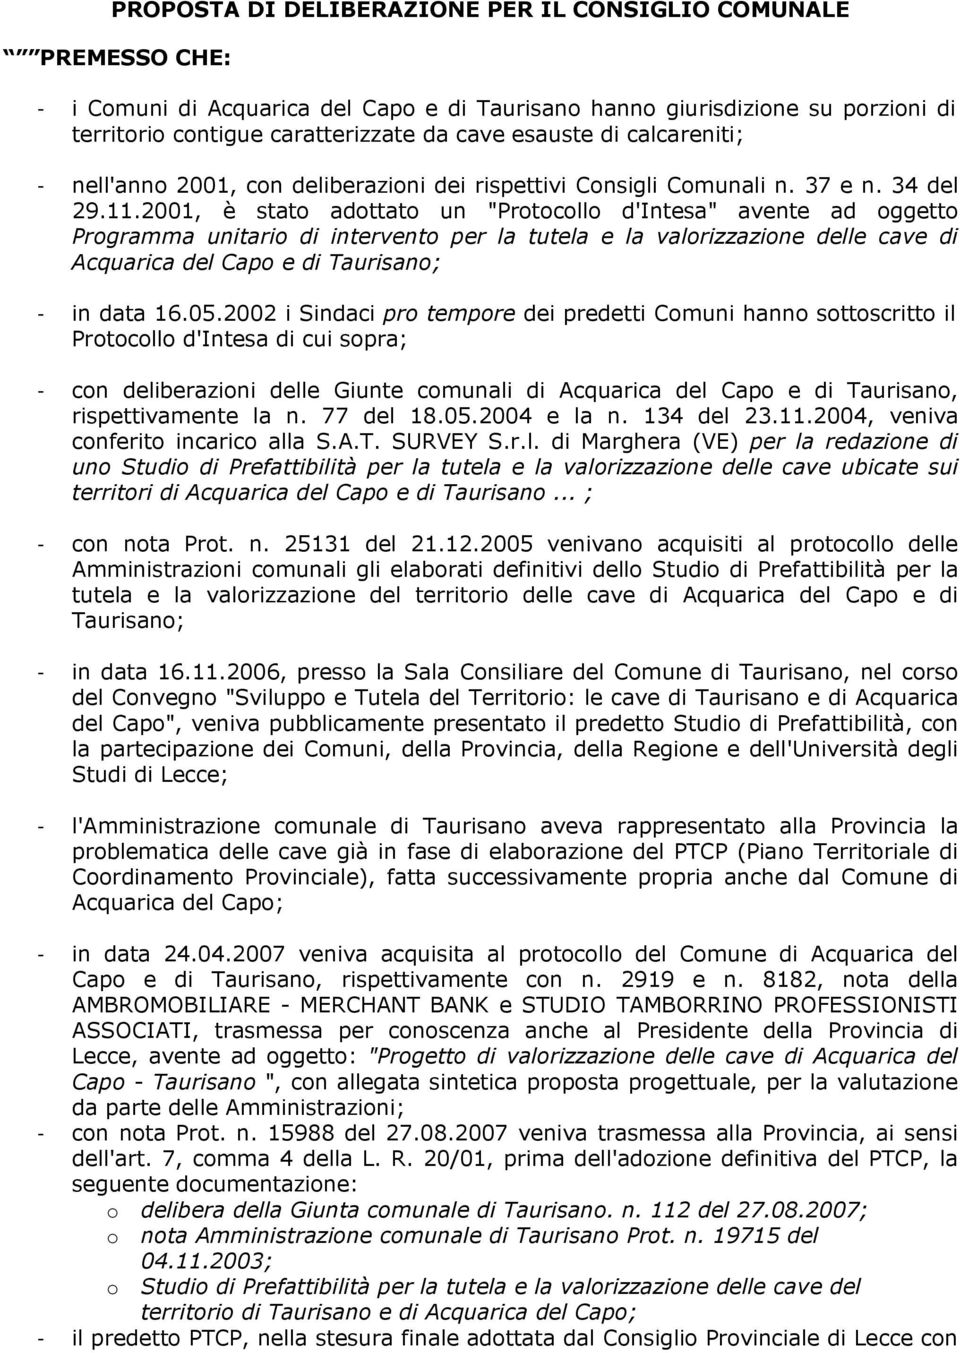 2001, è stato adottato un "Protocollo d'intesa" avente ad oggetto Programma unitario di intervento per la tutela e la valorizzazione delle cave di Acquarica del Capo e di Taurisano; - in data 16.05.